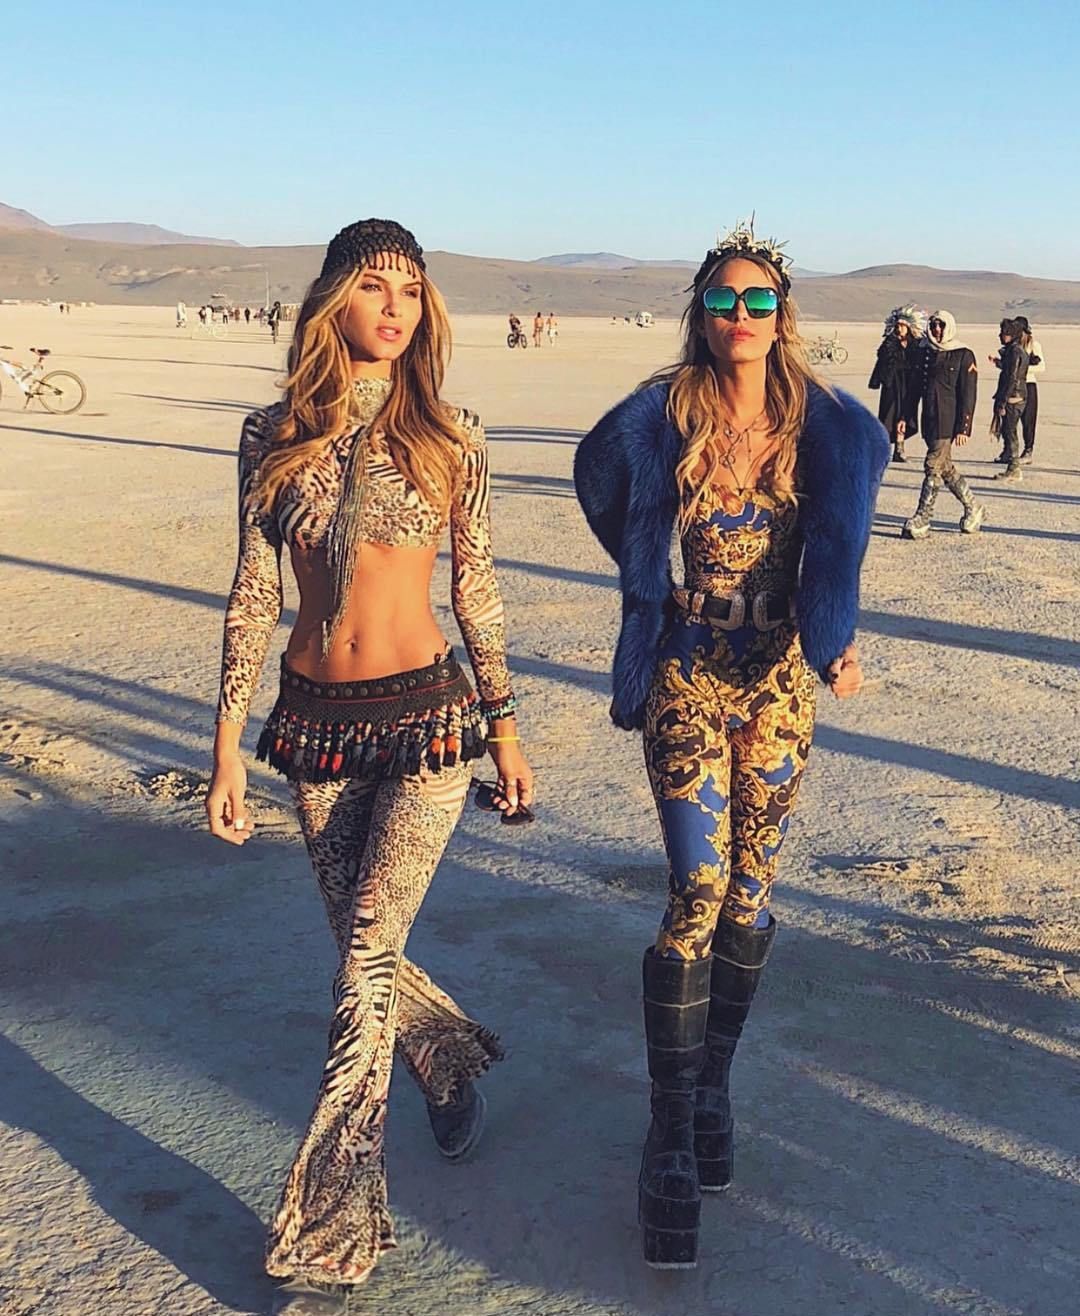 Girls at Burning Man